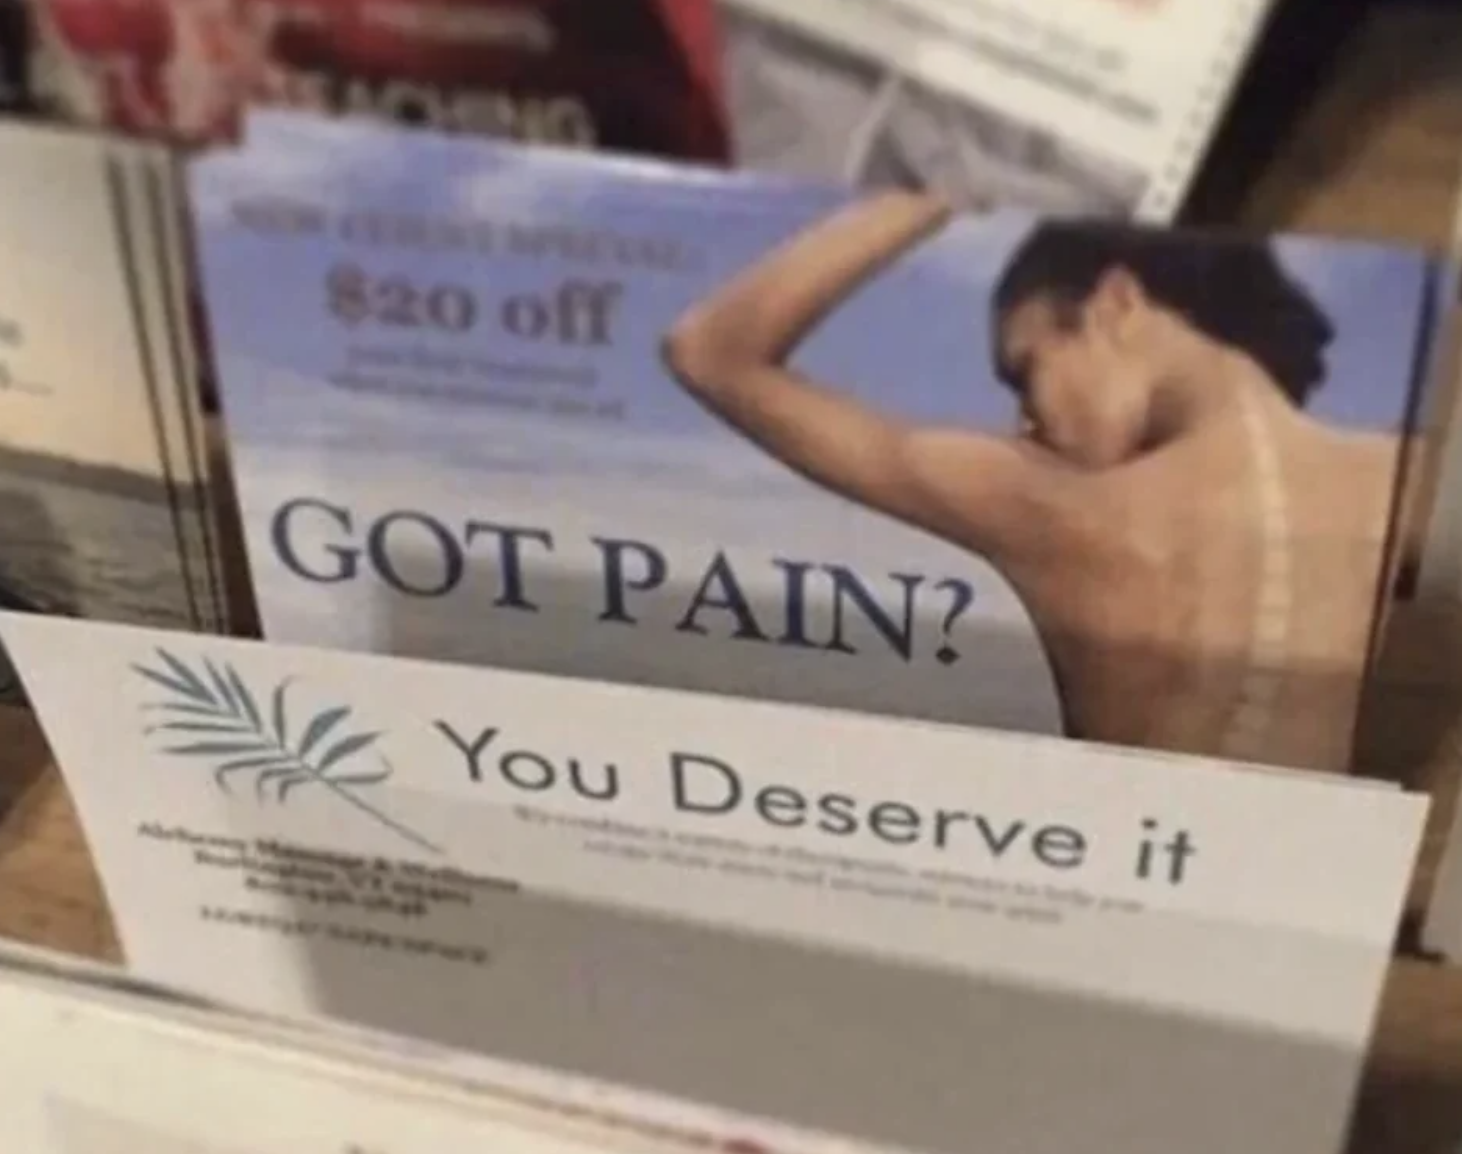 &quot;Got pain? You deserve it&quot;